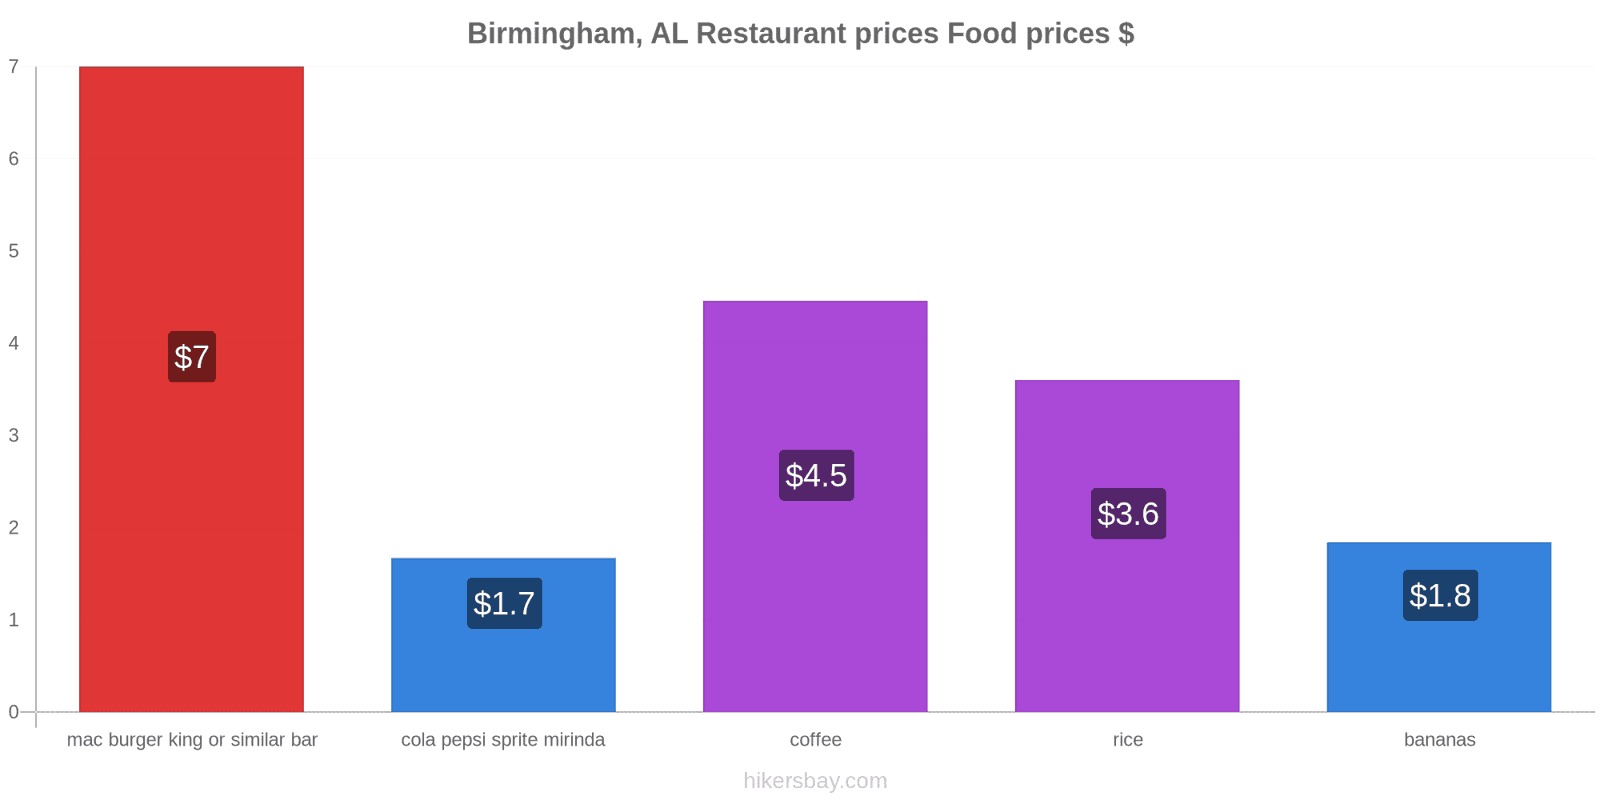 Birmingham, AL price changes hikersbay.com